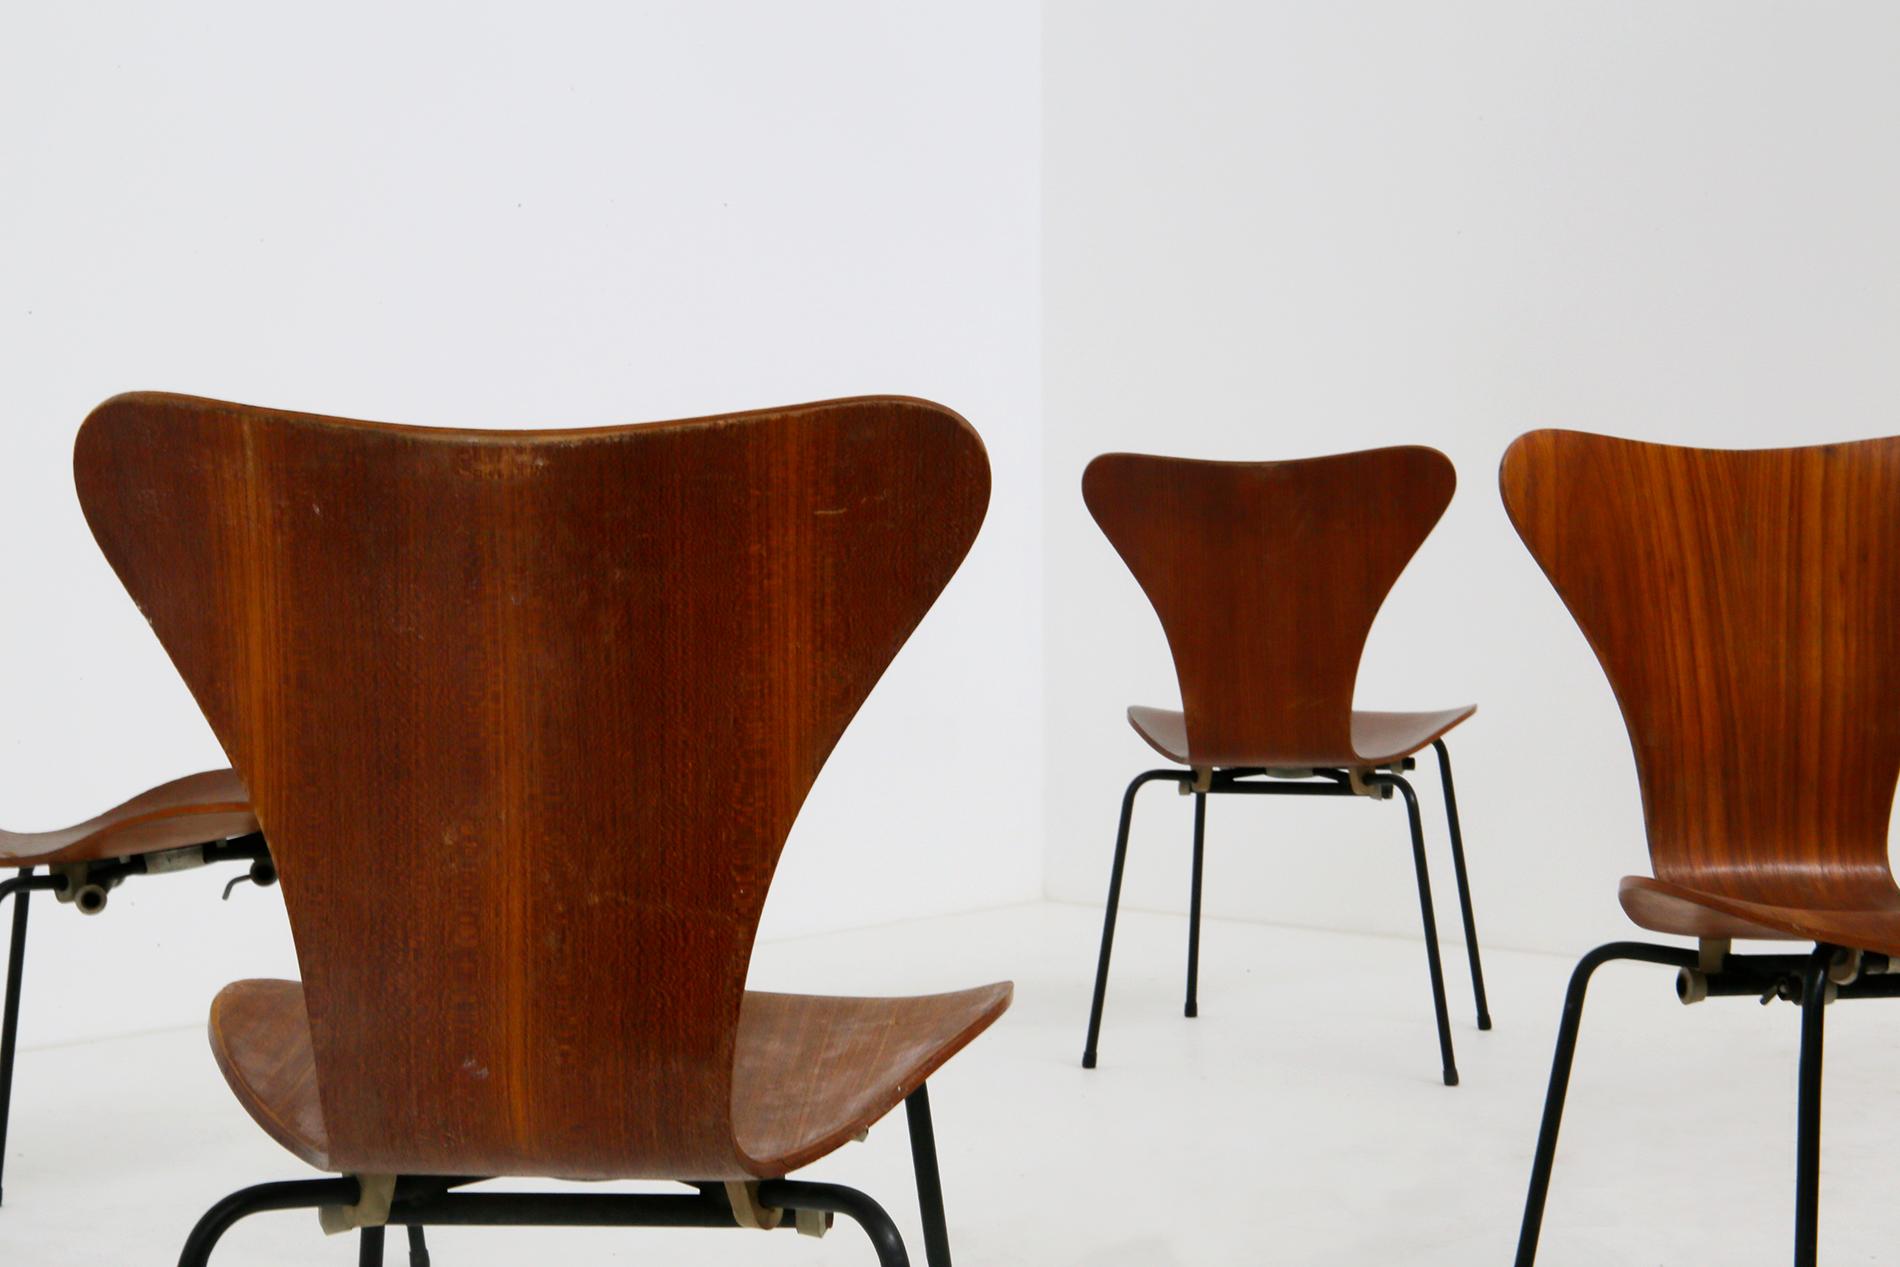 Stuhlset, entworfen von Arne Jacobsen für die brasilianische Fluggesellschaft Varig im Jahr 1950. Das Modell der Stühle ist der Butterly. Das Gestell der Stühle ist aus lackiertem Eisen gefertigt. Der Sitz ist aus gebogenem Holz gefertigt. Die